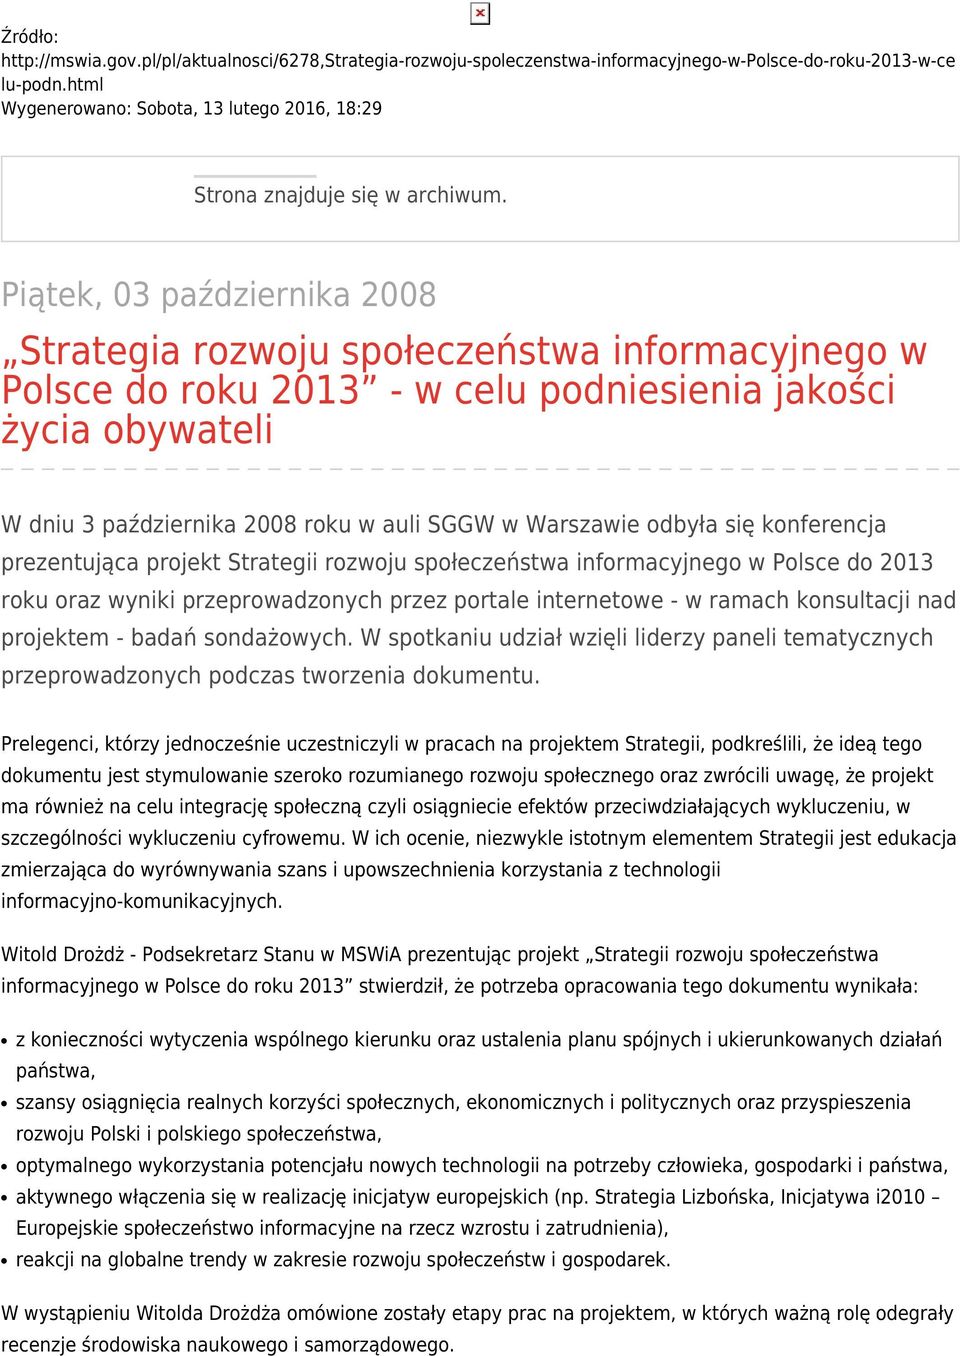 Piątek, 03 października 2008 Strategia rozwoju społeczeństwa informacyjnego w Polsce do roku 2013 - w celu podniesienia jakości życia obywateli W dniu 3 października 2008 roku w auli SGGW w Warszawie